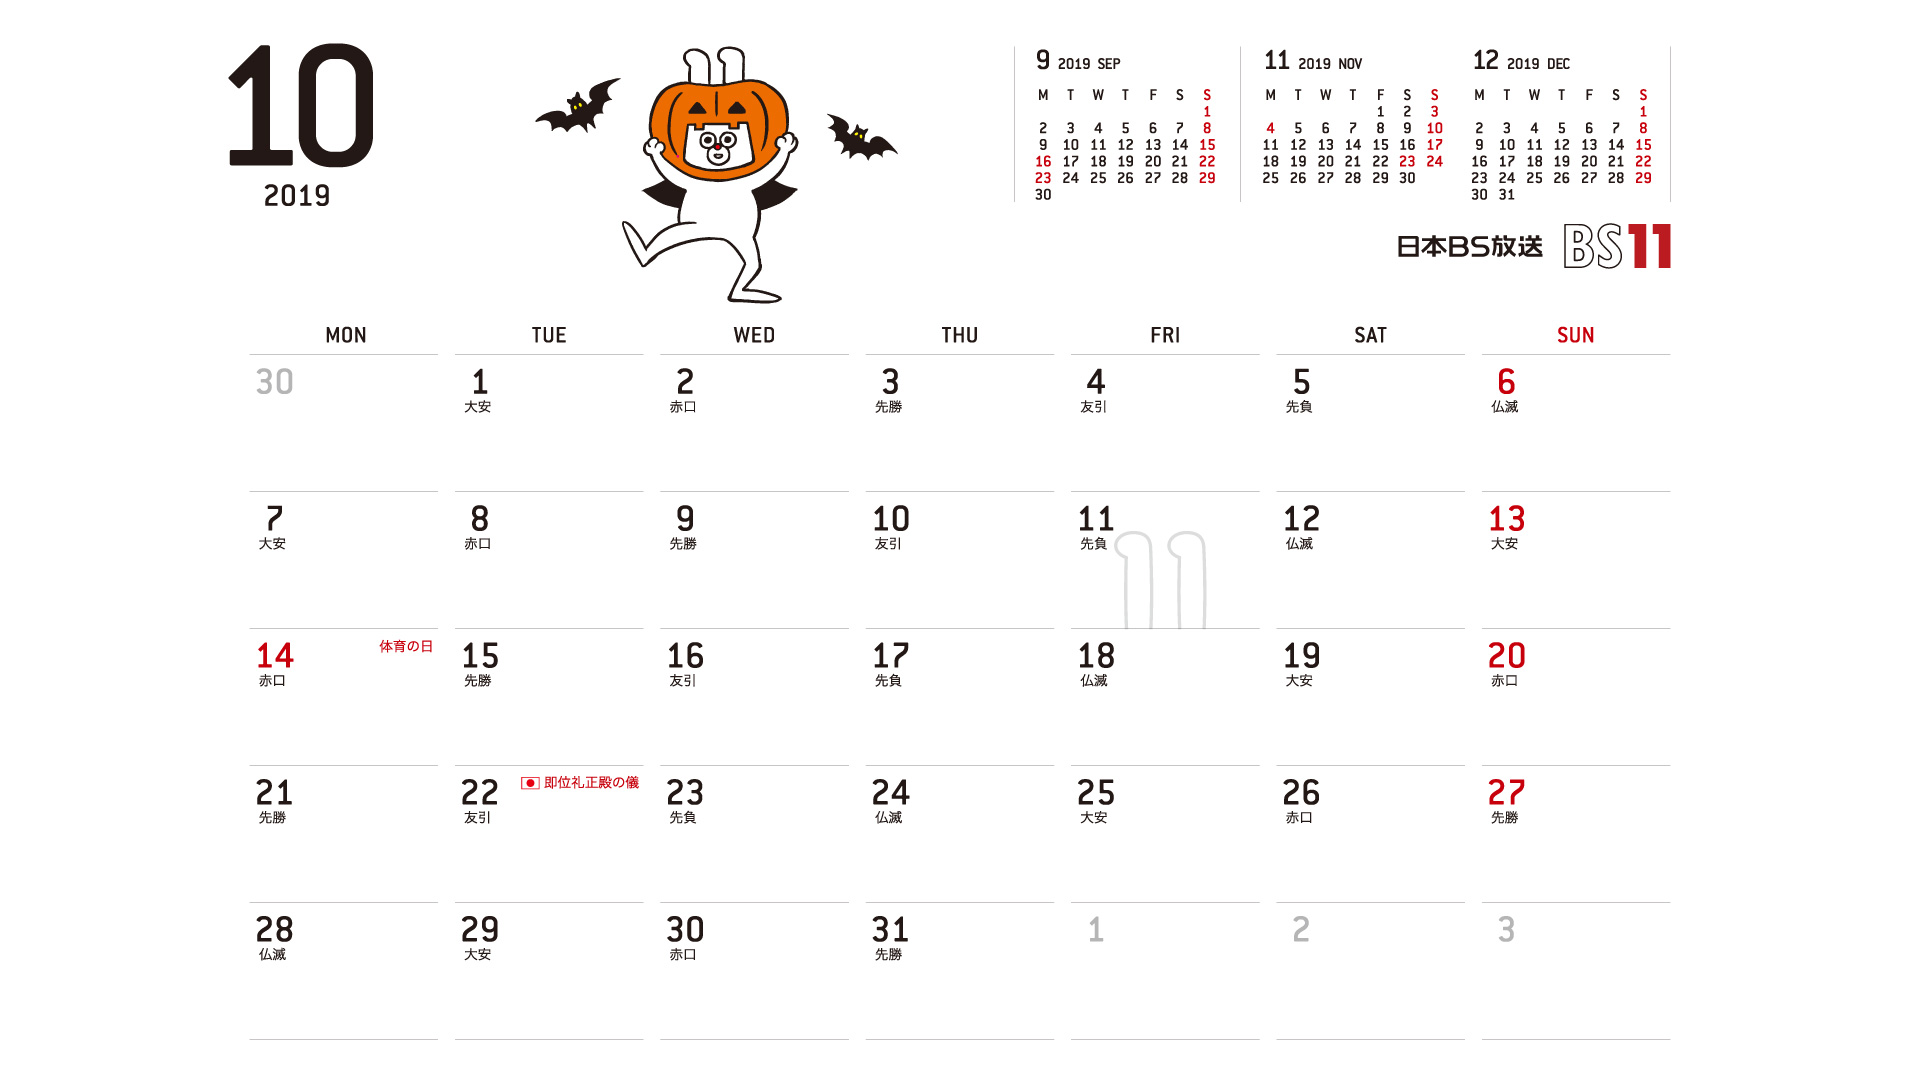 じゅういっちゃんのデジタルカレンダー19年10月 Bs11 イレブン いつでも無料放送